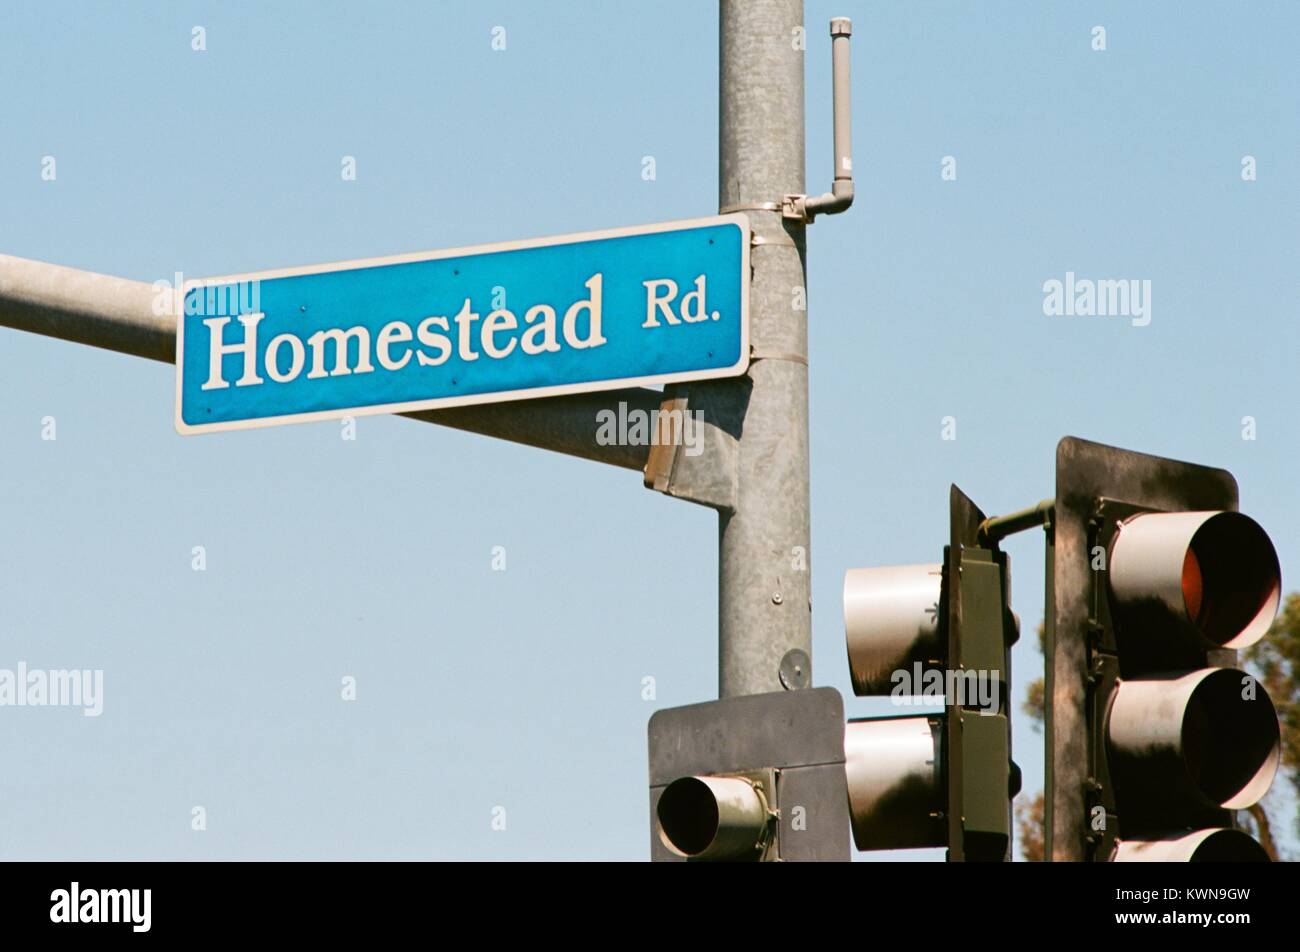 Close-up de señalización para Homestead Road, la calle principal que sirve el Apple Park, conocido coloquialmente como "La nave espacial", la nueva sede de Apple Inc en el Silicon Valley de la ciudad de Cupertino, California, 25 de julio de 2017. Foto de stock